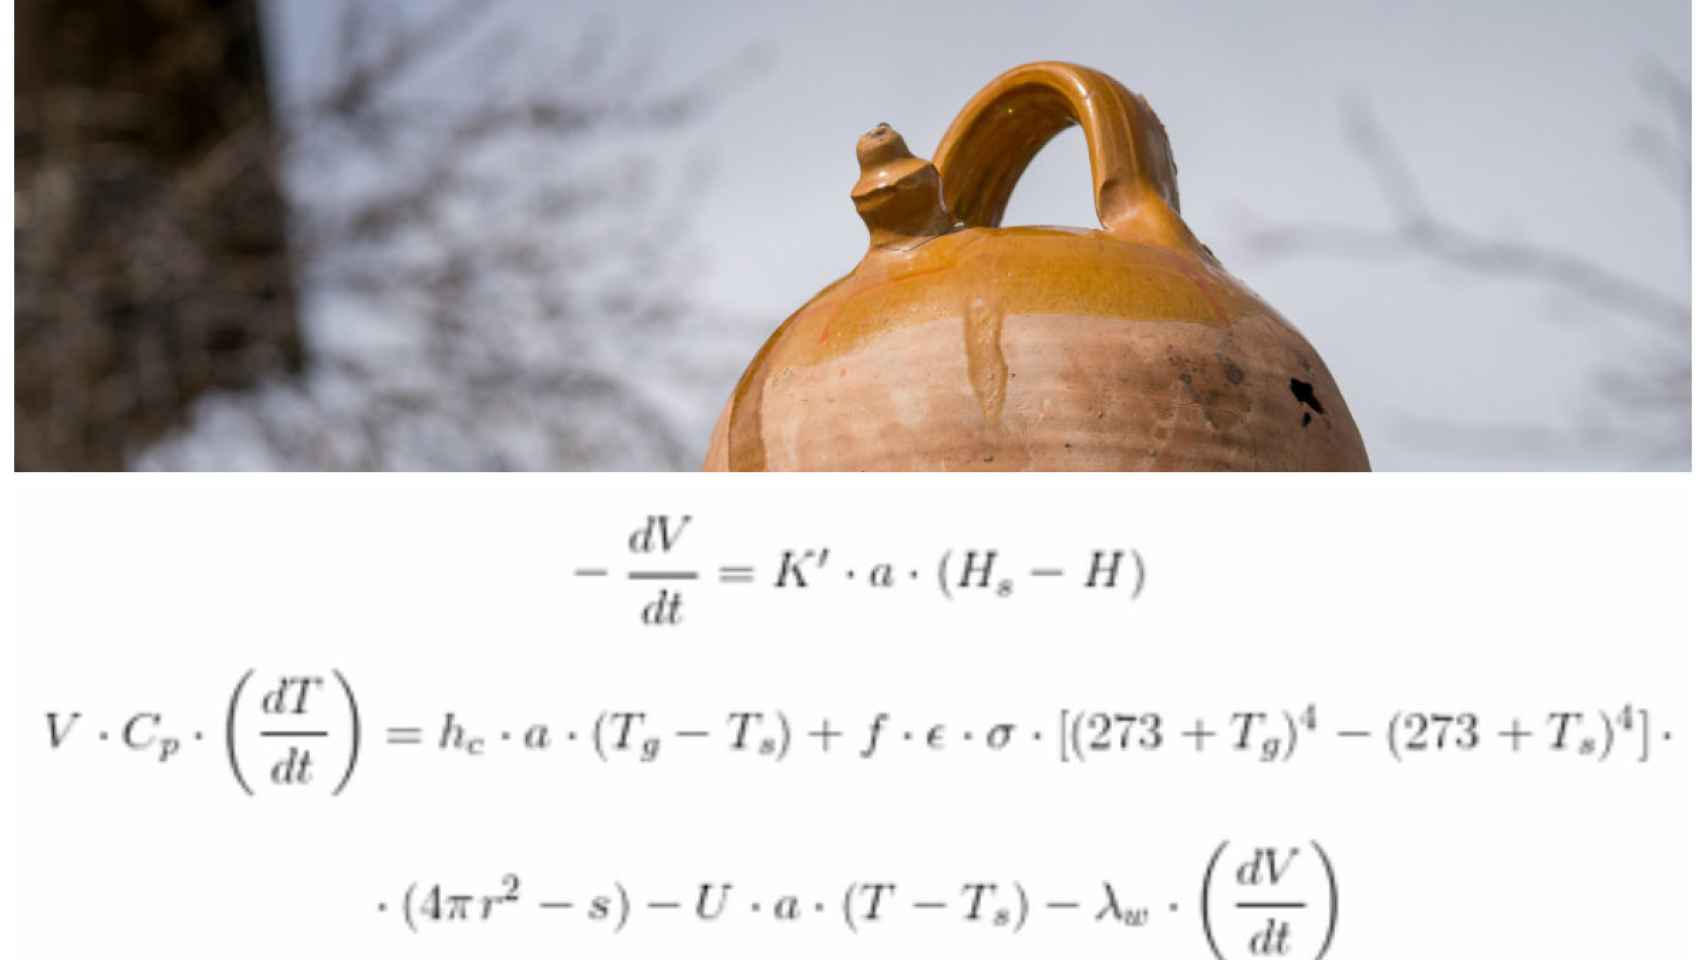 La fórmula del mecanismo del botijo desarrollada por Gabriel Pinto y José Ignacio Zubizarreta.